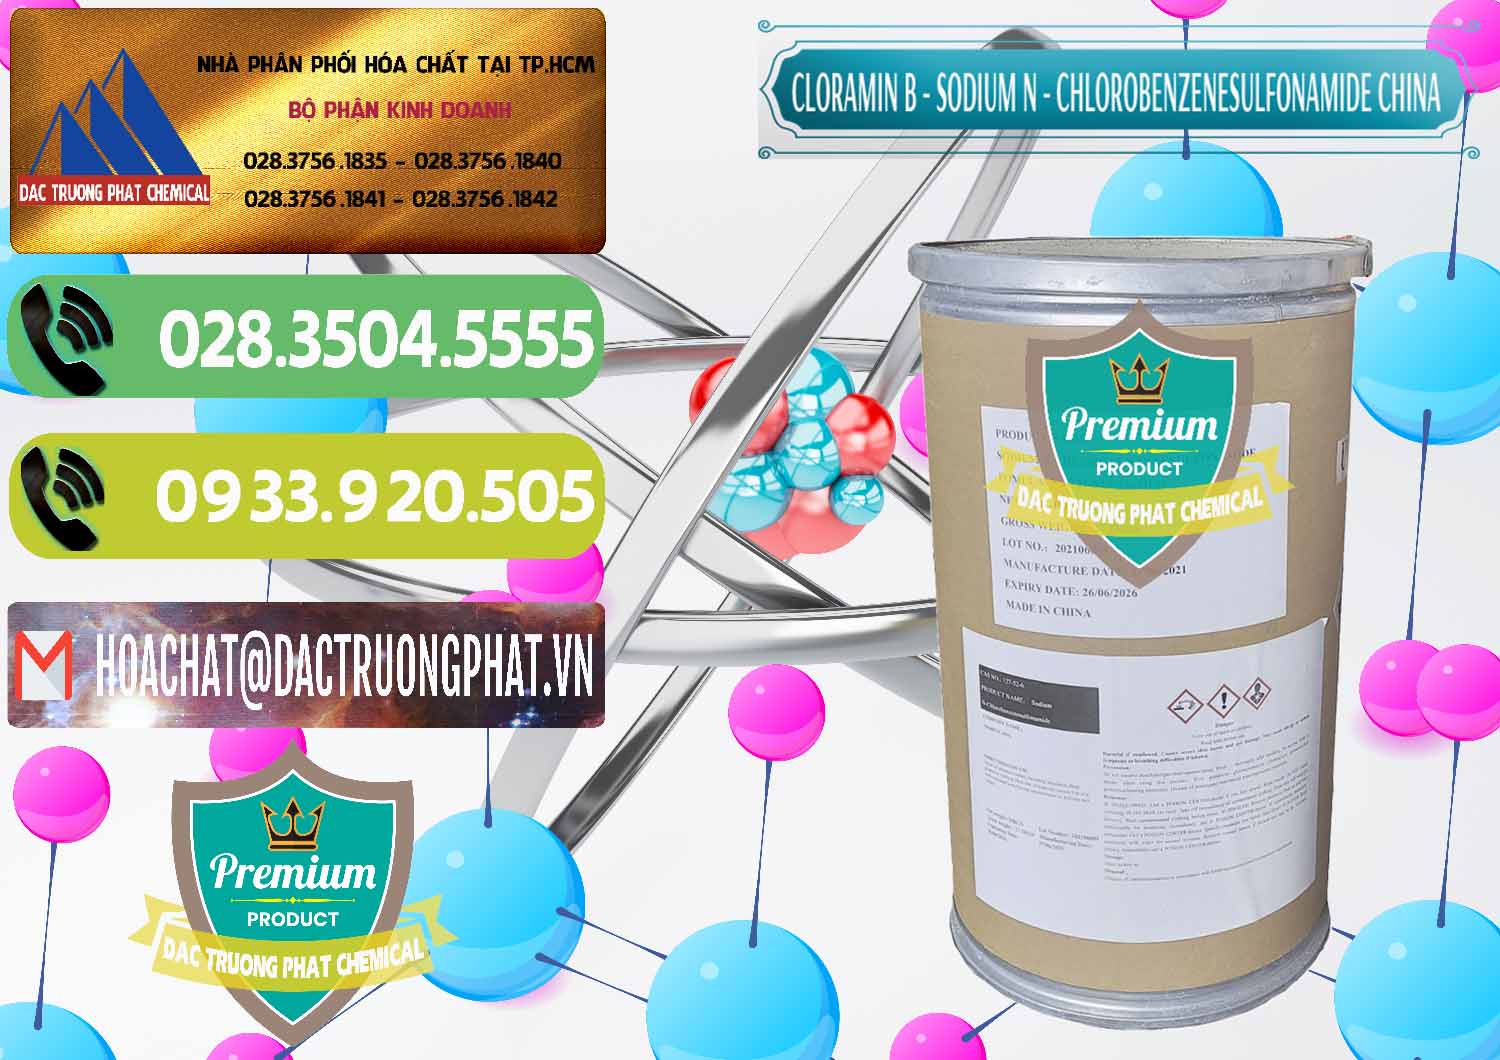 Nhà nhập khẩu _ bán Cloramin B Khử Trùng, Diệt Khuẩn Trung Quốc China - 0298 - Đơn vị chuyên phân phối và cung ứng hóa chất tại TP.HCM - hoachatmientay.vn